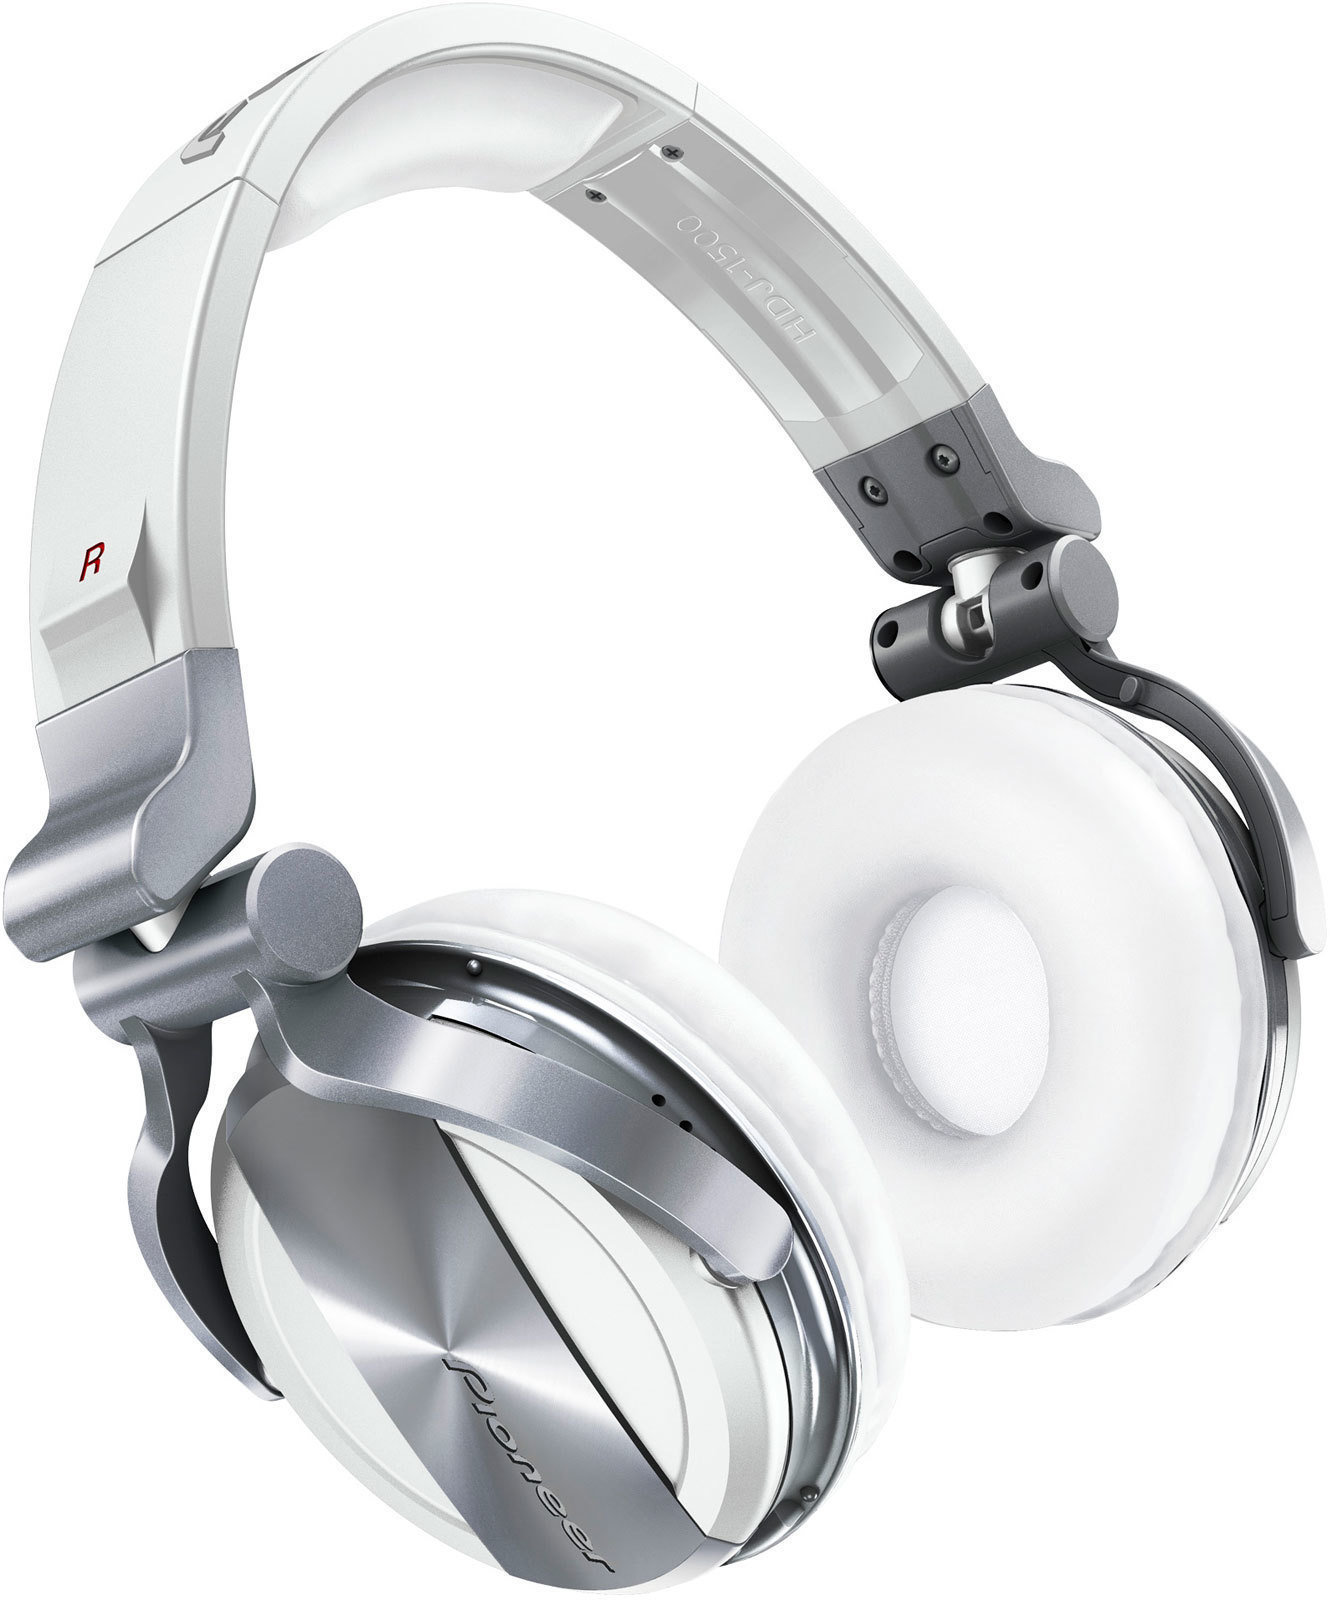 DJ-kuulokkeet Pioneer Dj HDJ-1500 White